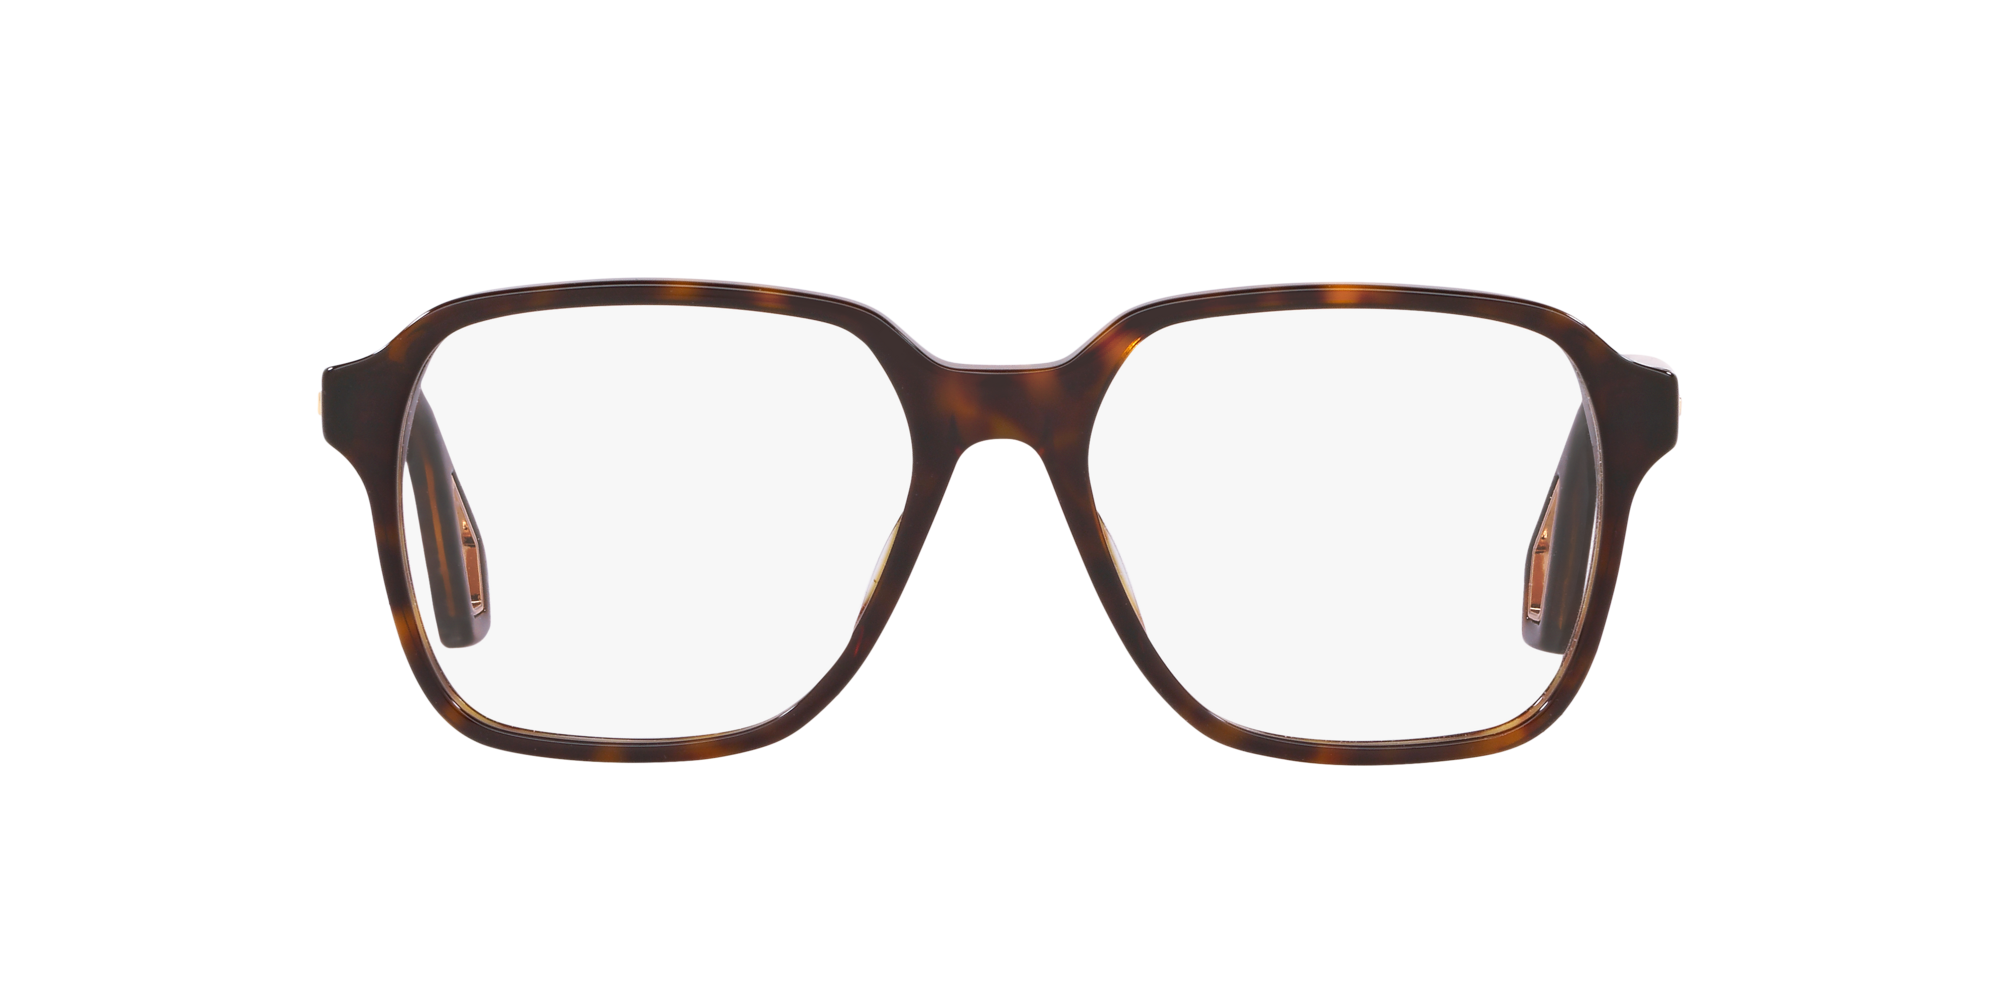 grandpa glasses frames